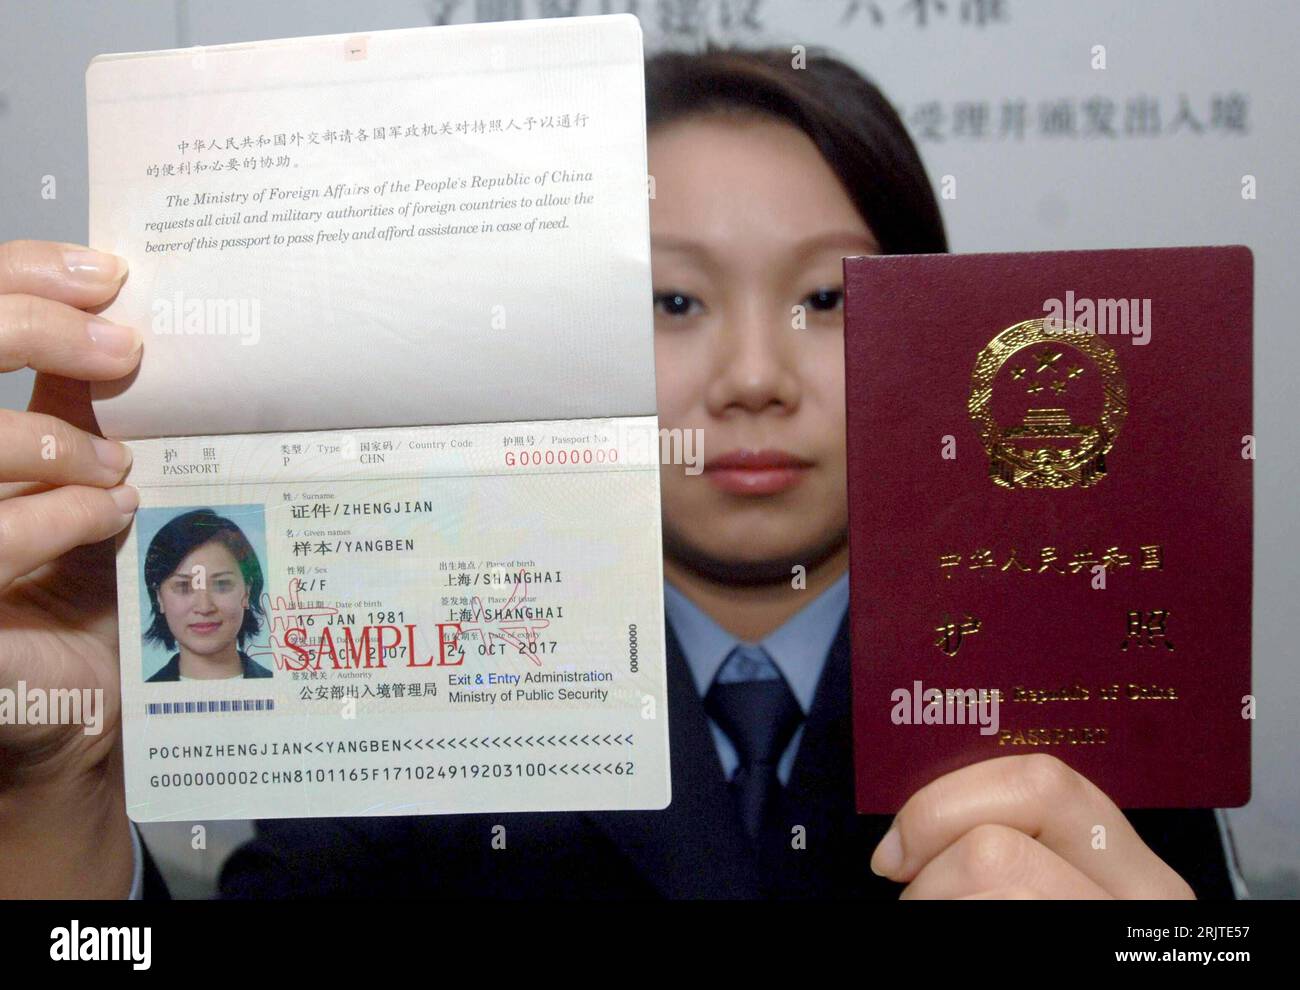 Сколько человек получили гражданство китая. Китайская подпись. Китайские подписи в паспортах.